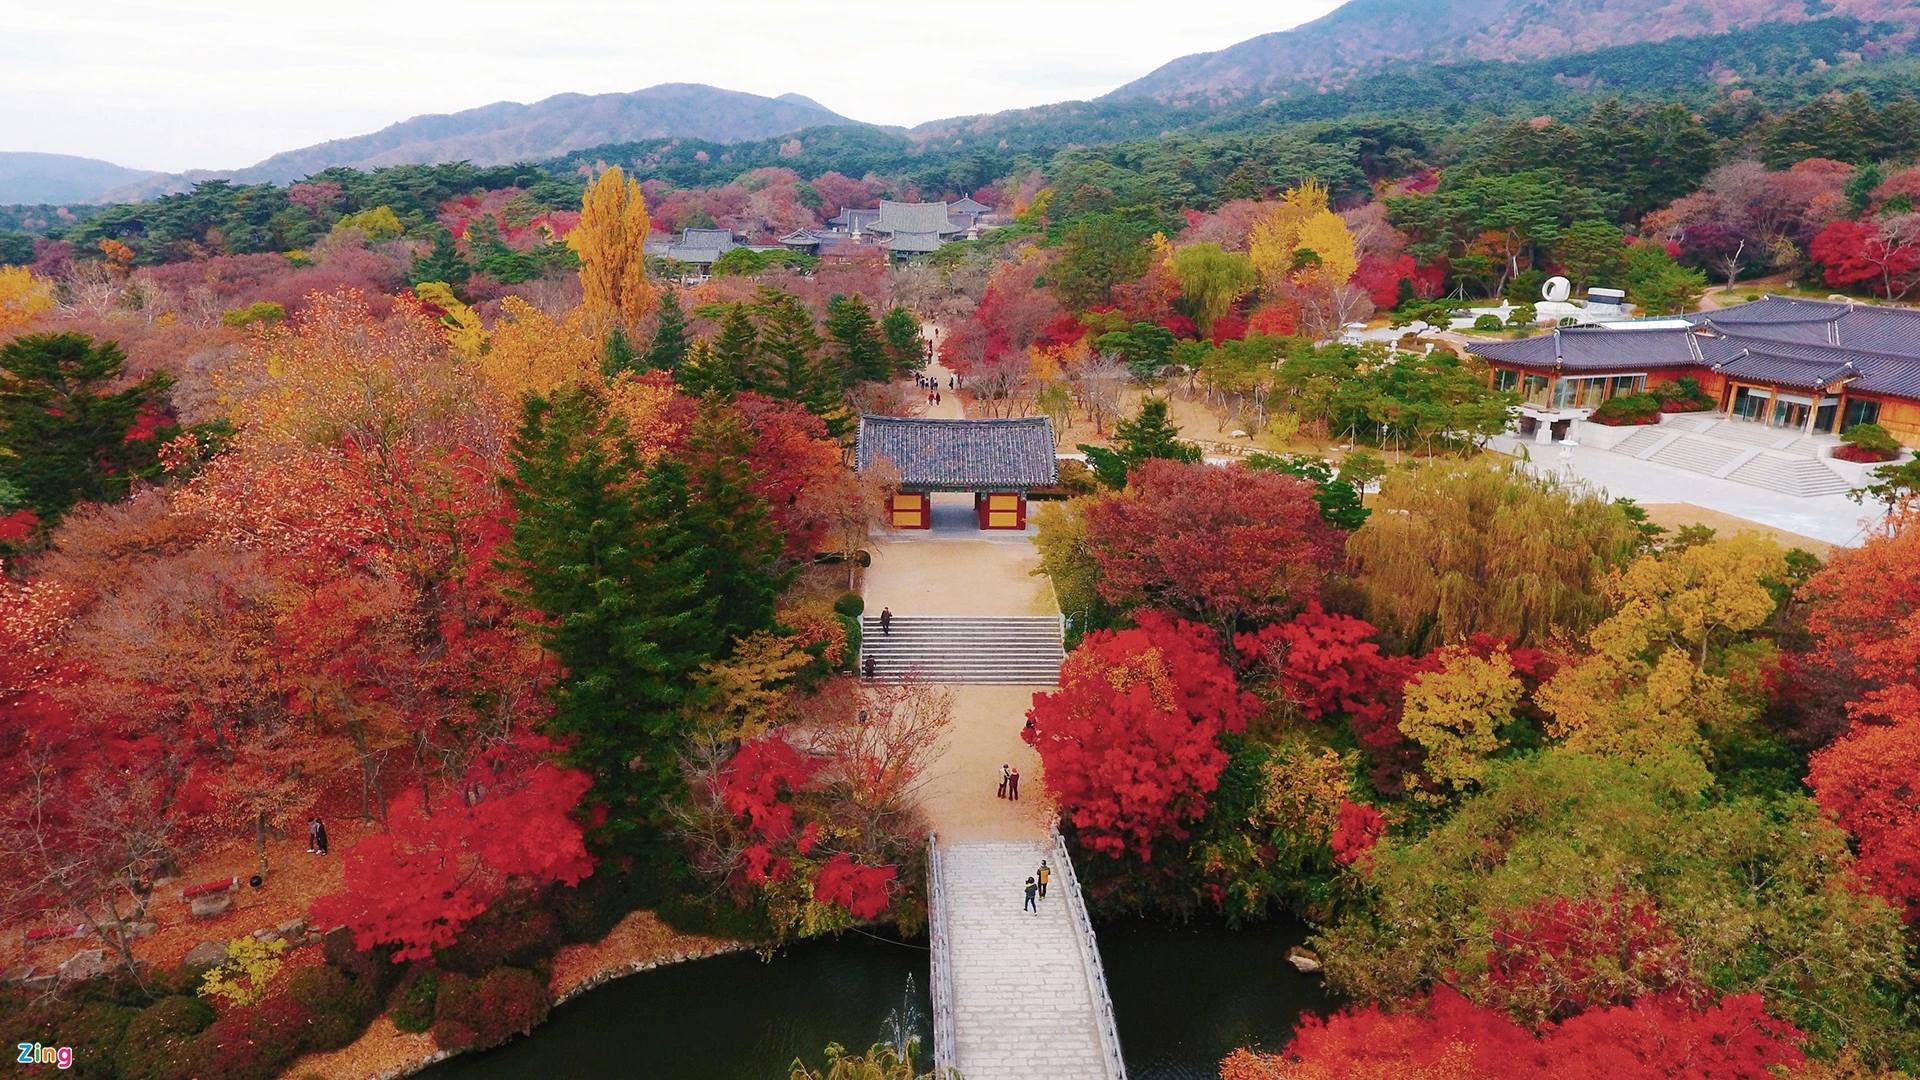 Tháng 12 ngắm khung cảnh đỏ rực khắp Hàn Quốc. Những lùm cây phong, ngân hạnh, rẻ quạt, anh đào đỏ và vàng rực tại khu vực chùa Bulguksa thuộc tỉnh Gyeongsangbuk-do là một trong nhiều điểm du lịch lý tưởng ở Hàn Quốc vào mùa thu. Những tán lá chuyển màu làm cho sắc vàng và đỏ phủ khắp các ngọn núi. Thông thường, thời gian rực rỡ nhất chỉ trong khoảng hai tuần, sau đó lá chuyển màu đen dần. Thời tiết ở các tỉnh phía bắc của Hàn Quốc thời điểm này khá lạnh. Buổi sáng, nhiệt độ thường xuống tới 3 độ C, giữa trưa khoảng 8 độ C nhưng vẫn tương đối dễ chịu.